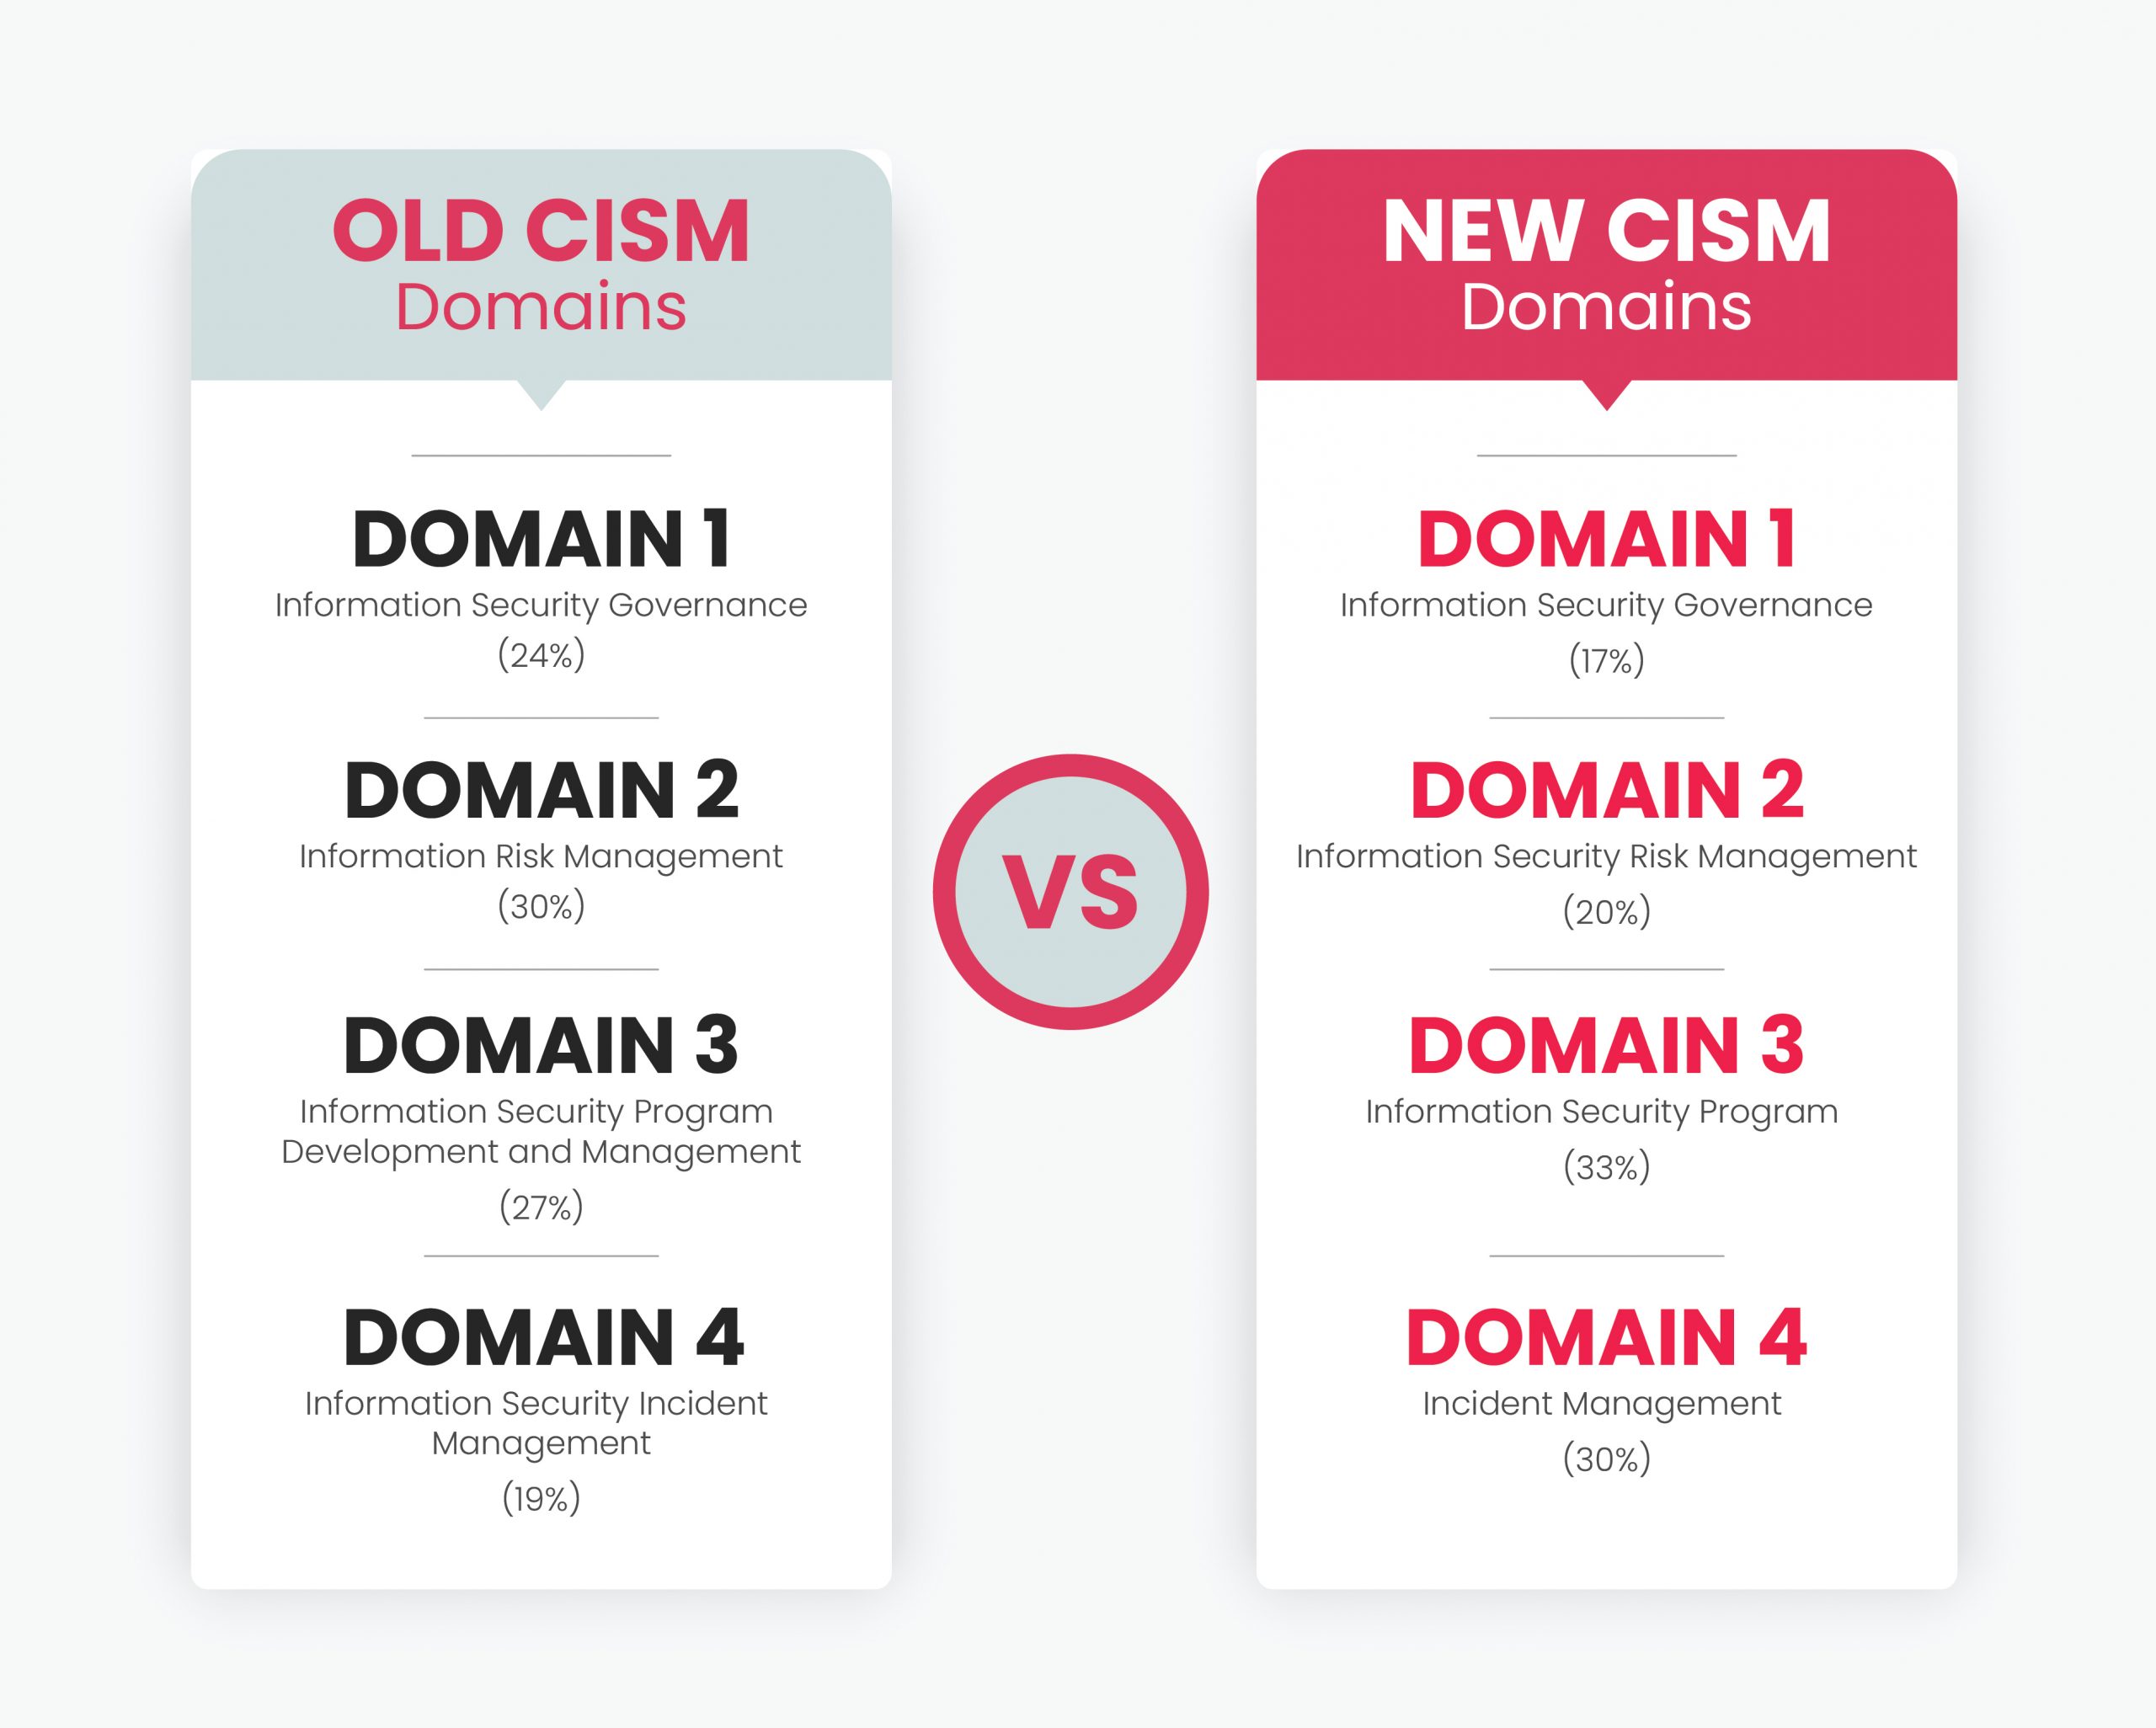 Old CISM Domains vs New CISM Domains